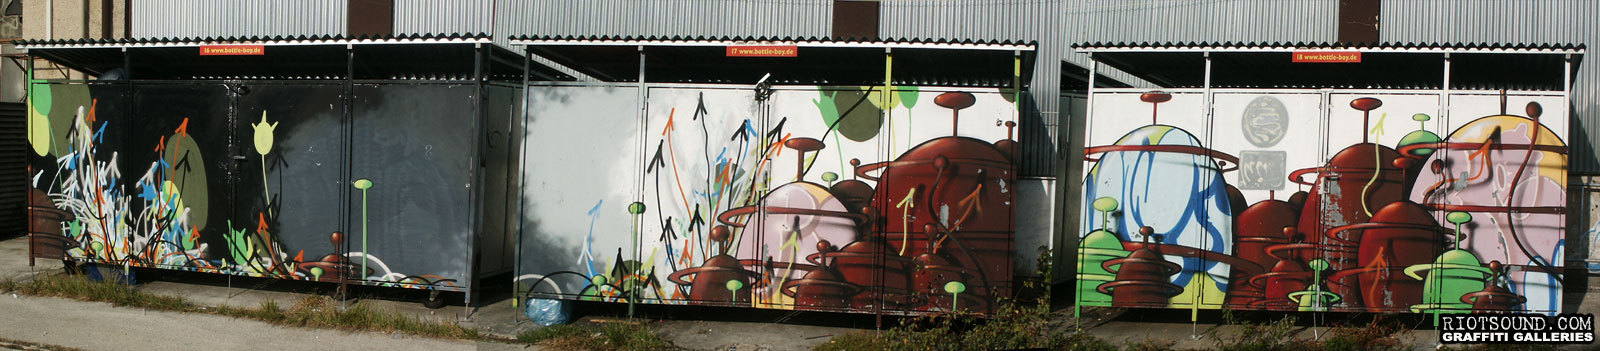 Graffiti Panel Art